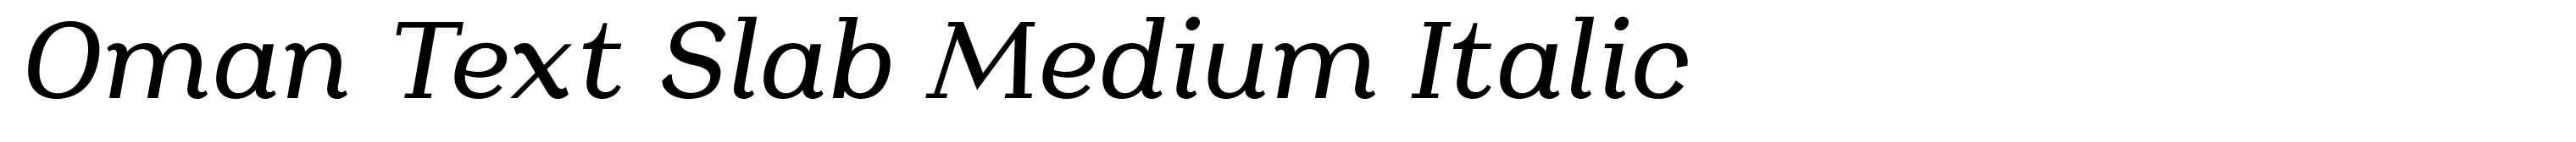 Oman Text Slab Medium Italic